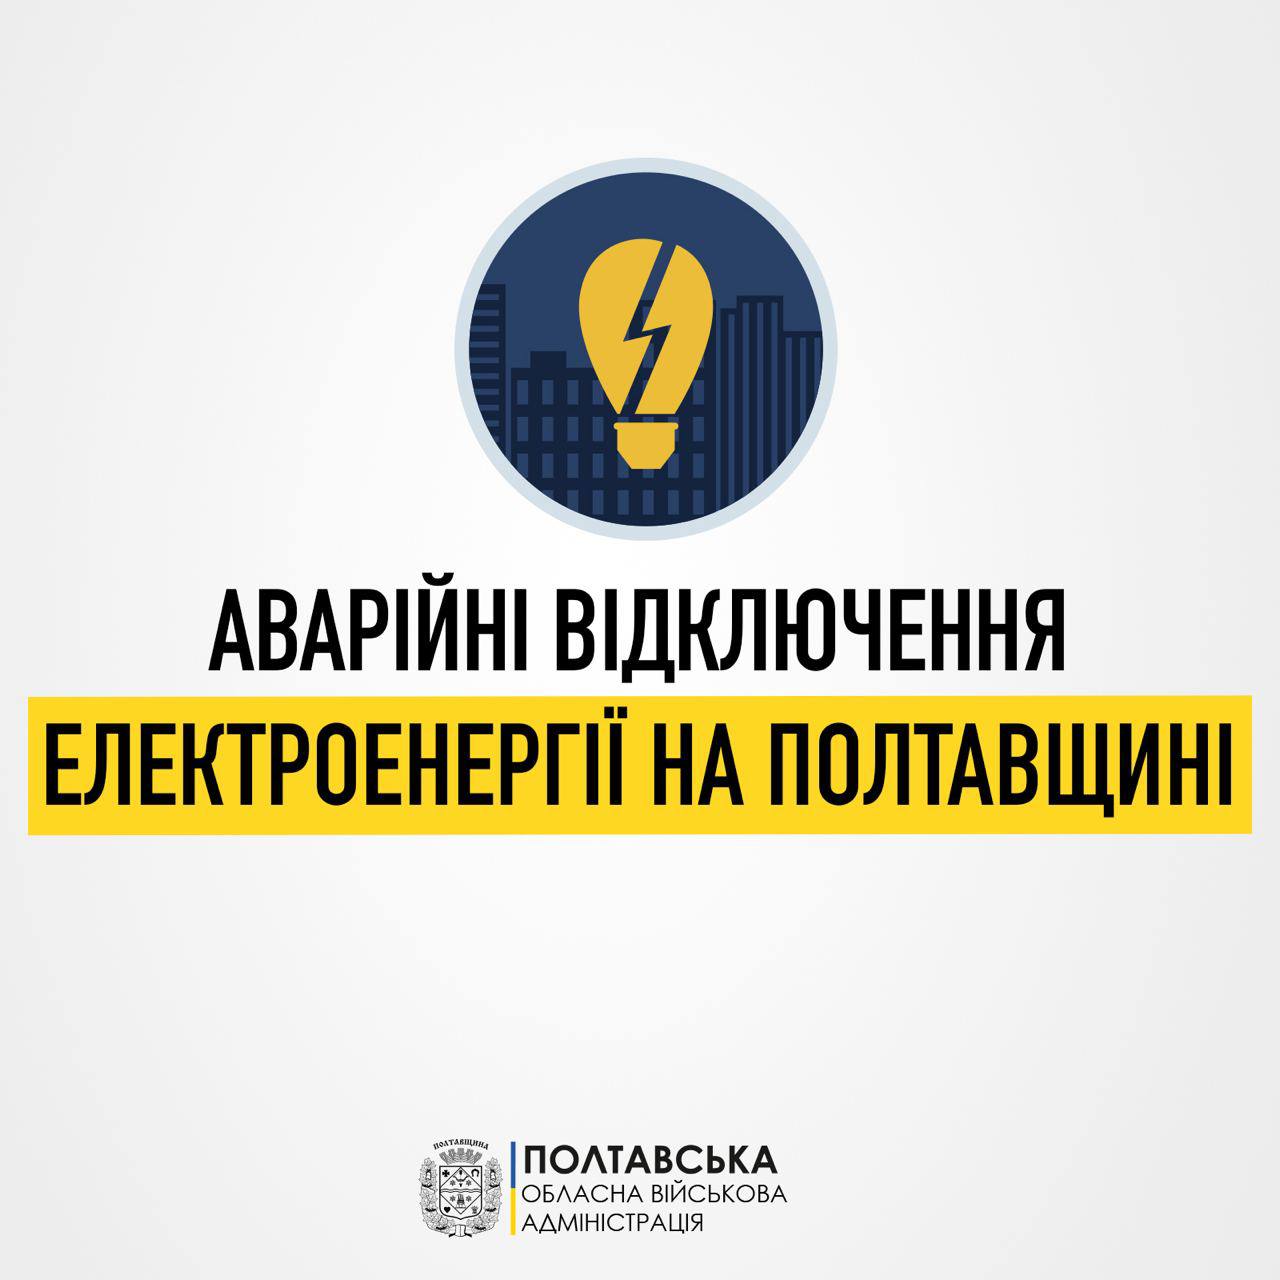 На Полтавщині ввели аварійне відключення електроенергії на всіх 10 чергах